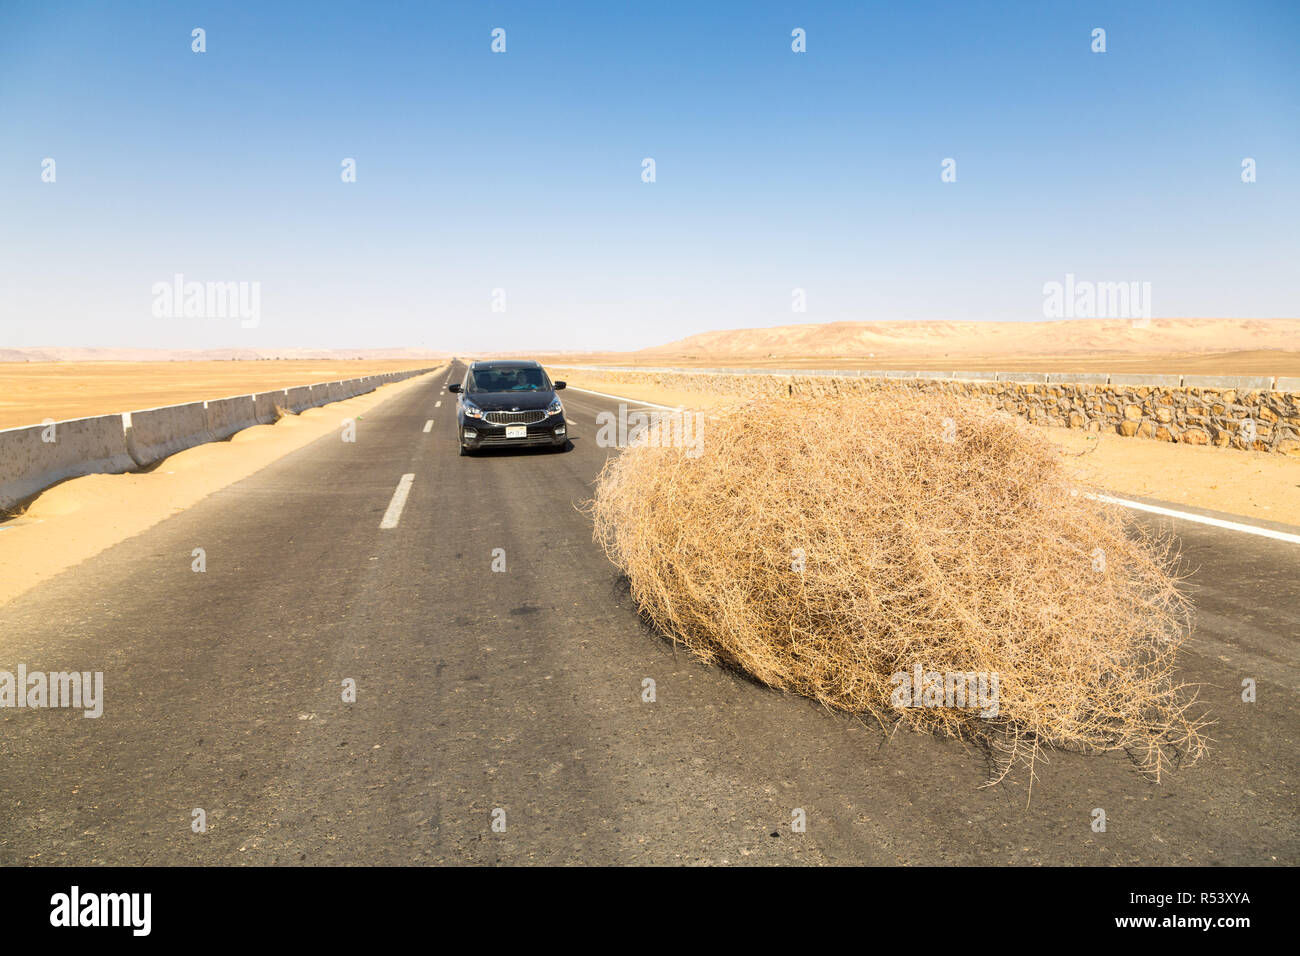 Ein Auto von einem riesigen TUMBLEWEED auf einer Autobahn mit sandigen Dünen angehalten, zwischen Oase Bahariya und Farafra, Sahara, die Westliche Wüste Ägyptens. Stockfoto